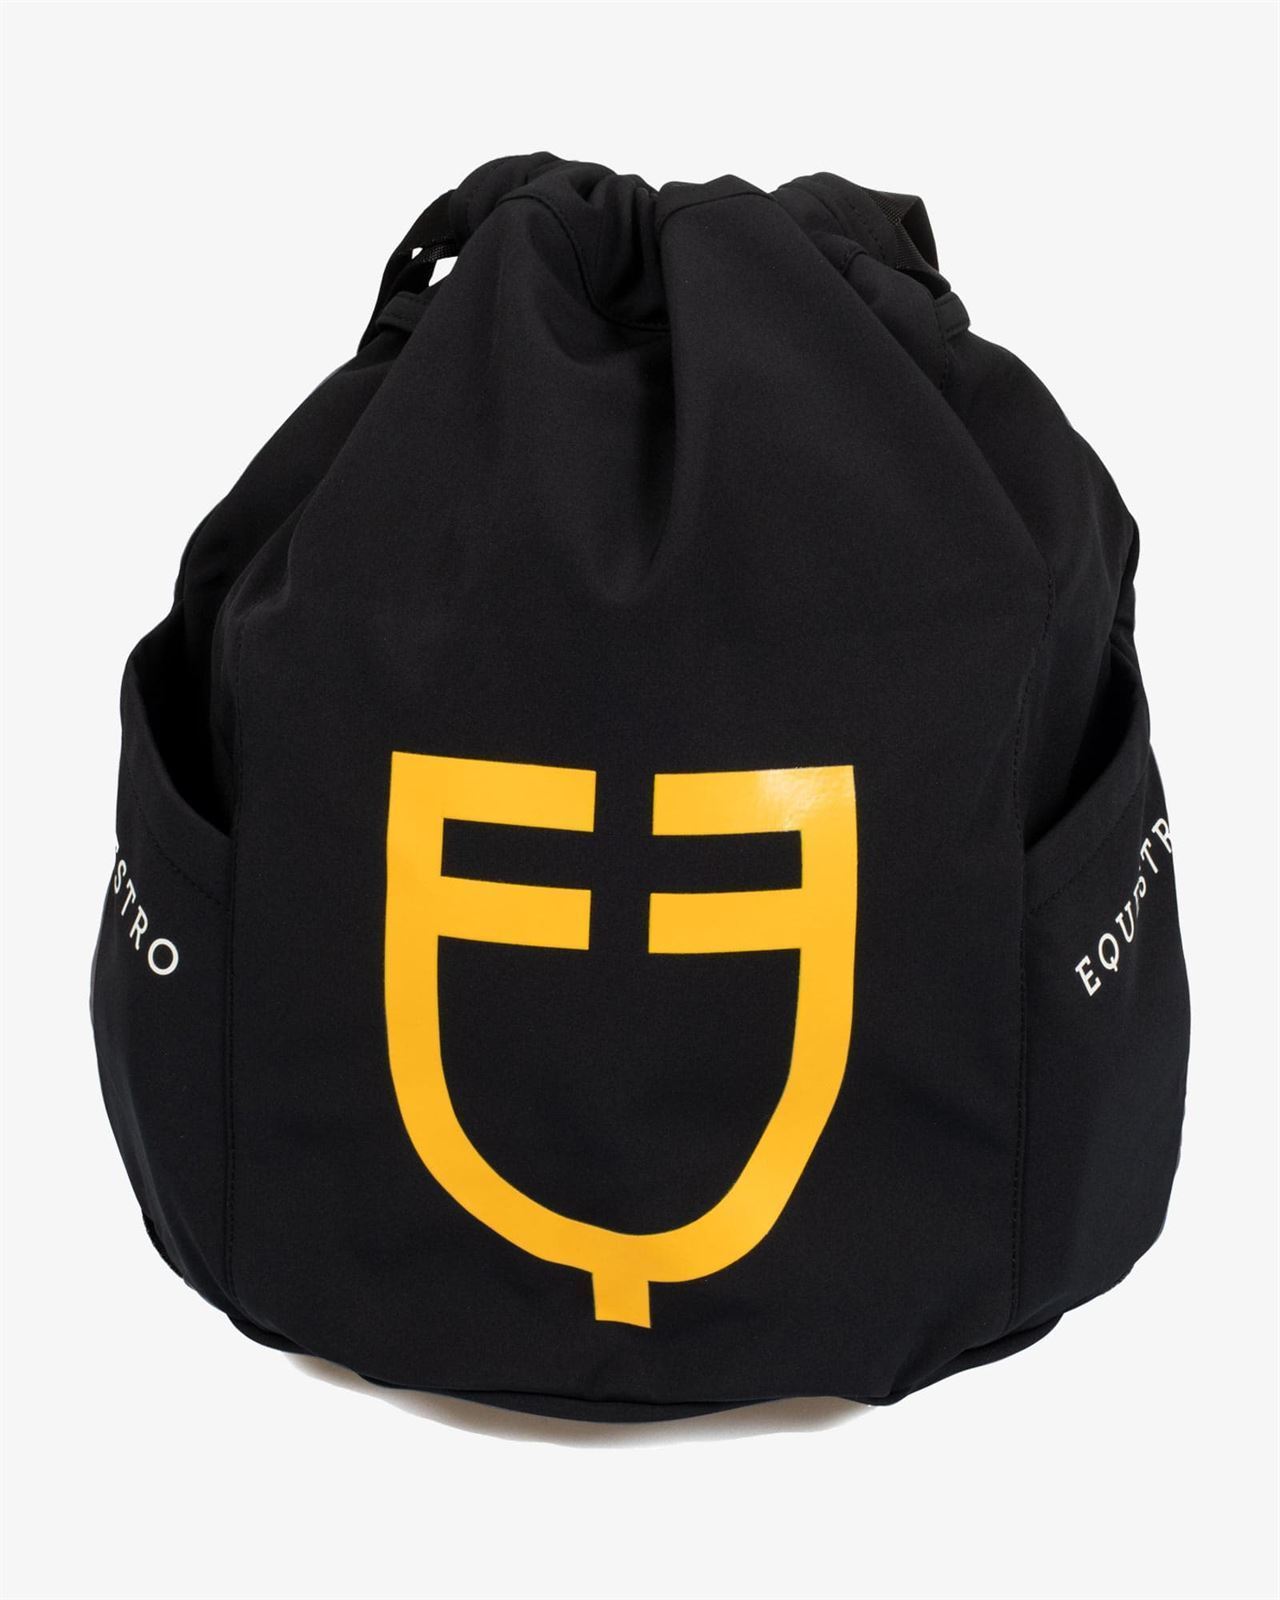 Mochila tela para casco y demás usos EQUESTRO negra logo amarillo - Imagen 2